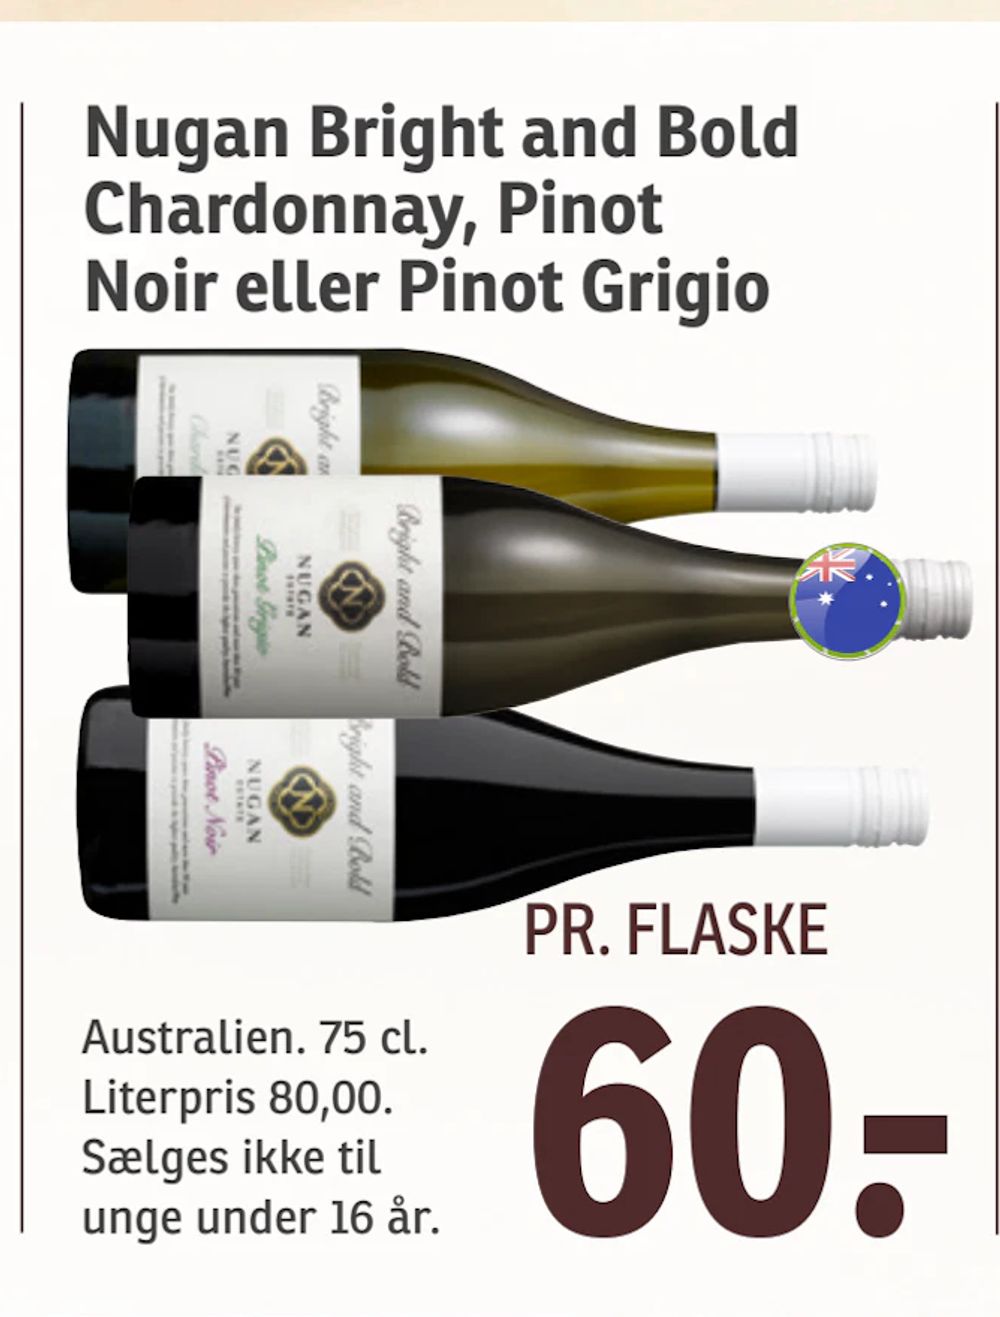 Tilbud på Nugan Bright and Bold Chardonnay, Pinot Noir eller Pinot Grigio fra SPAR til 60 kr.